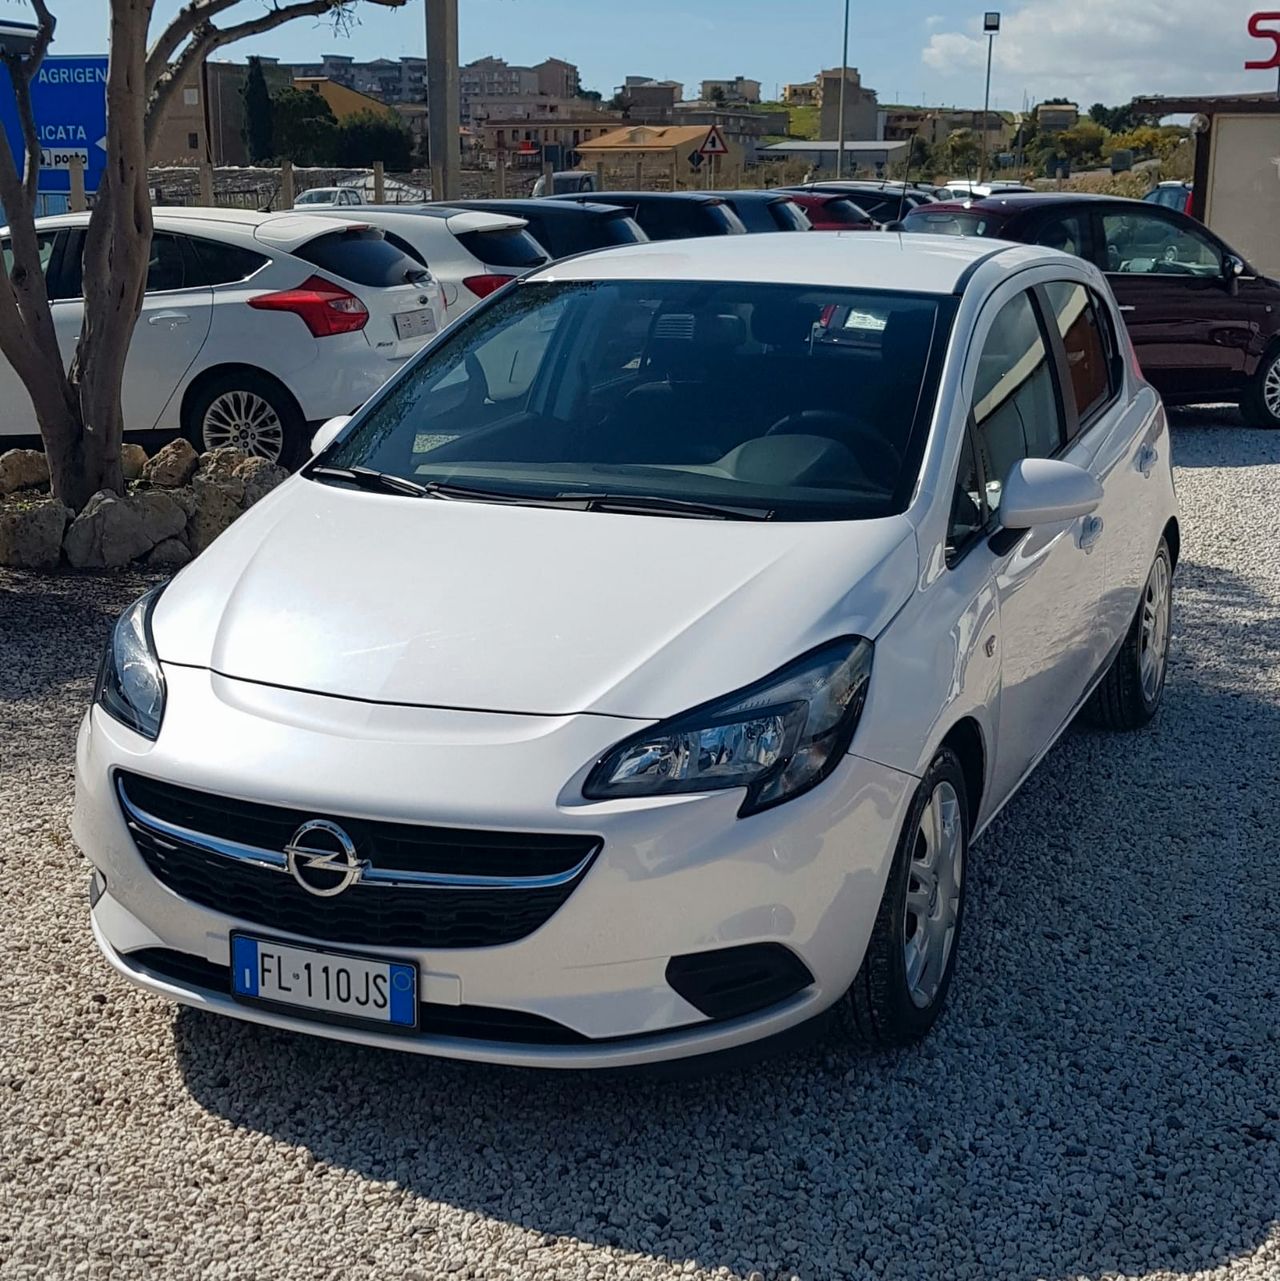 Opel Corsa 1.3 CDTI 75CV